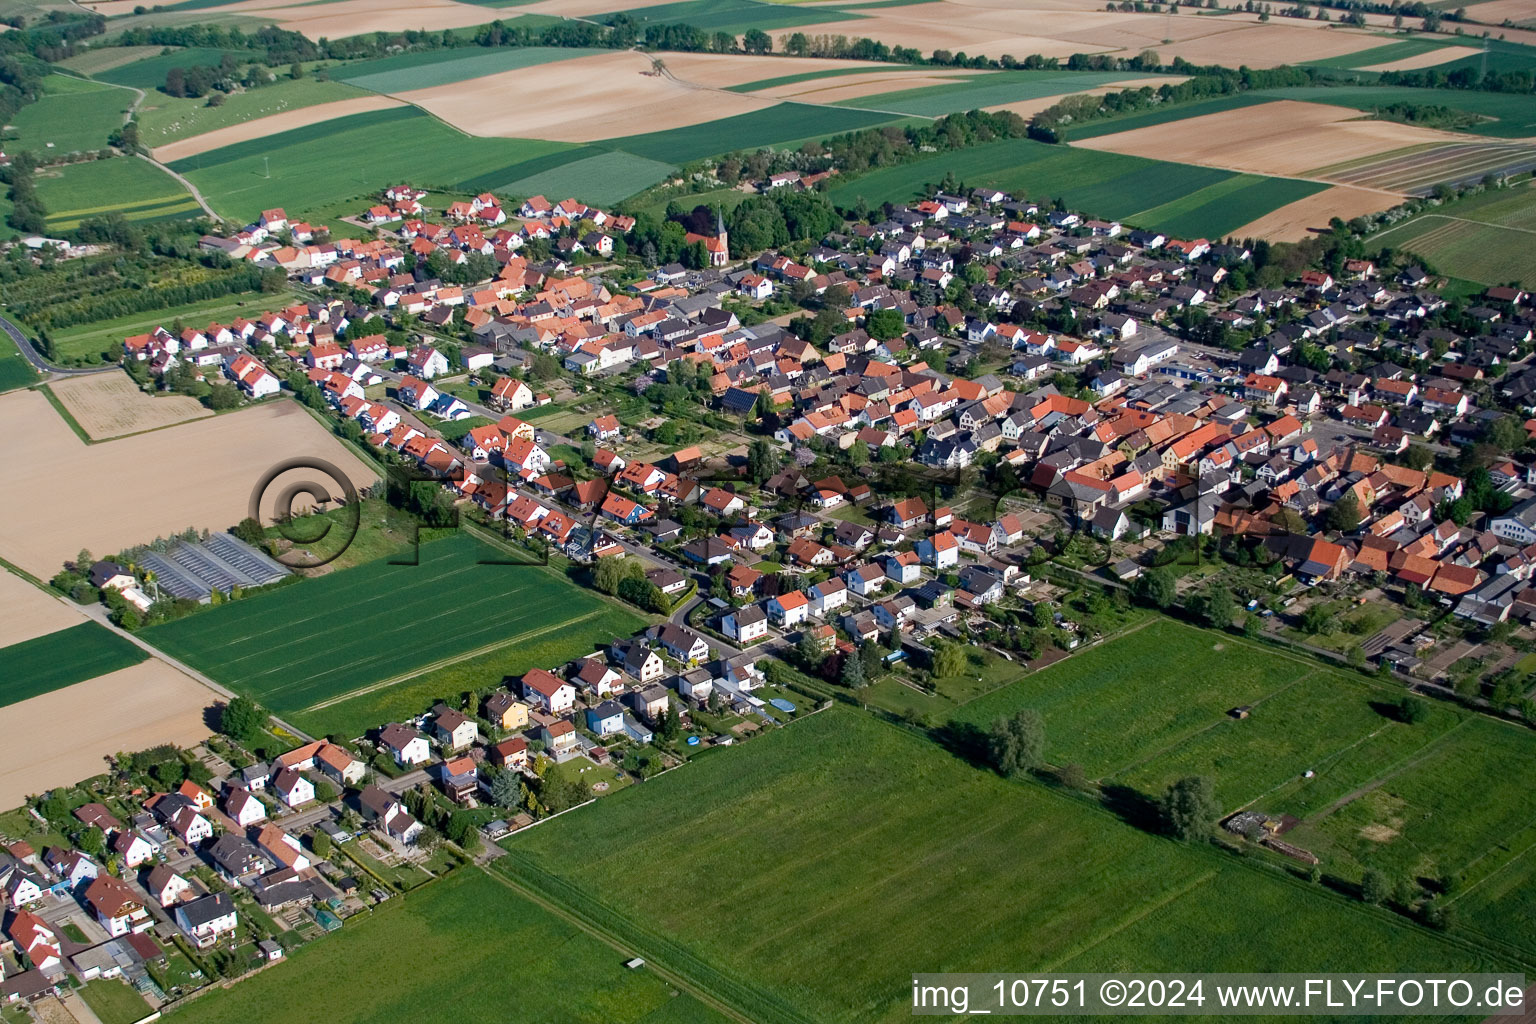 Vue aérienne de Champs agricoles et surfaces utilisables à Freckenfeld dans le département Rhénanie-Palatinat, Allemagne